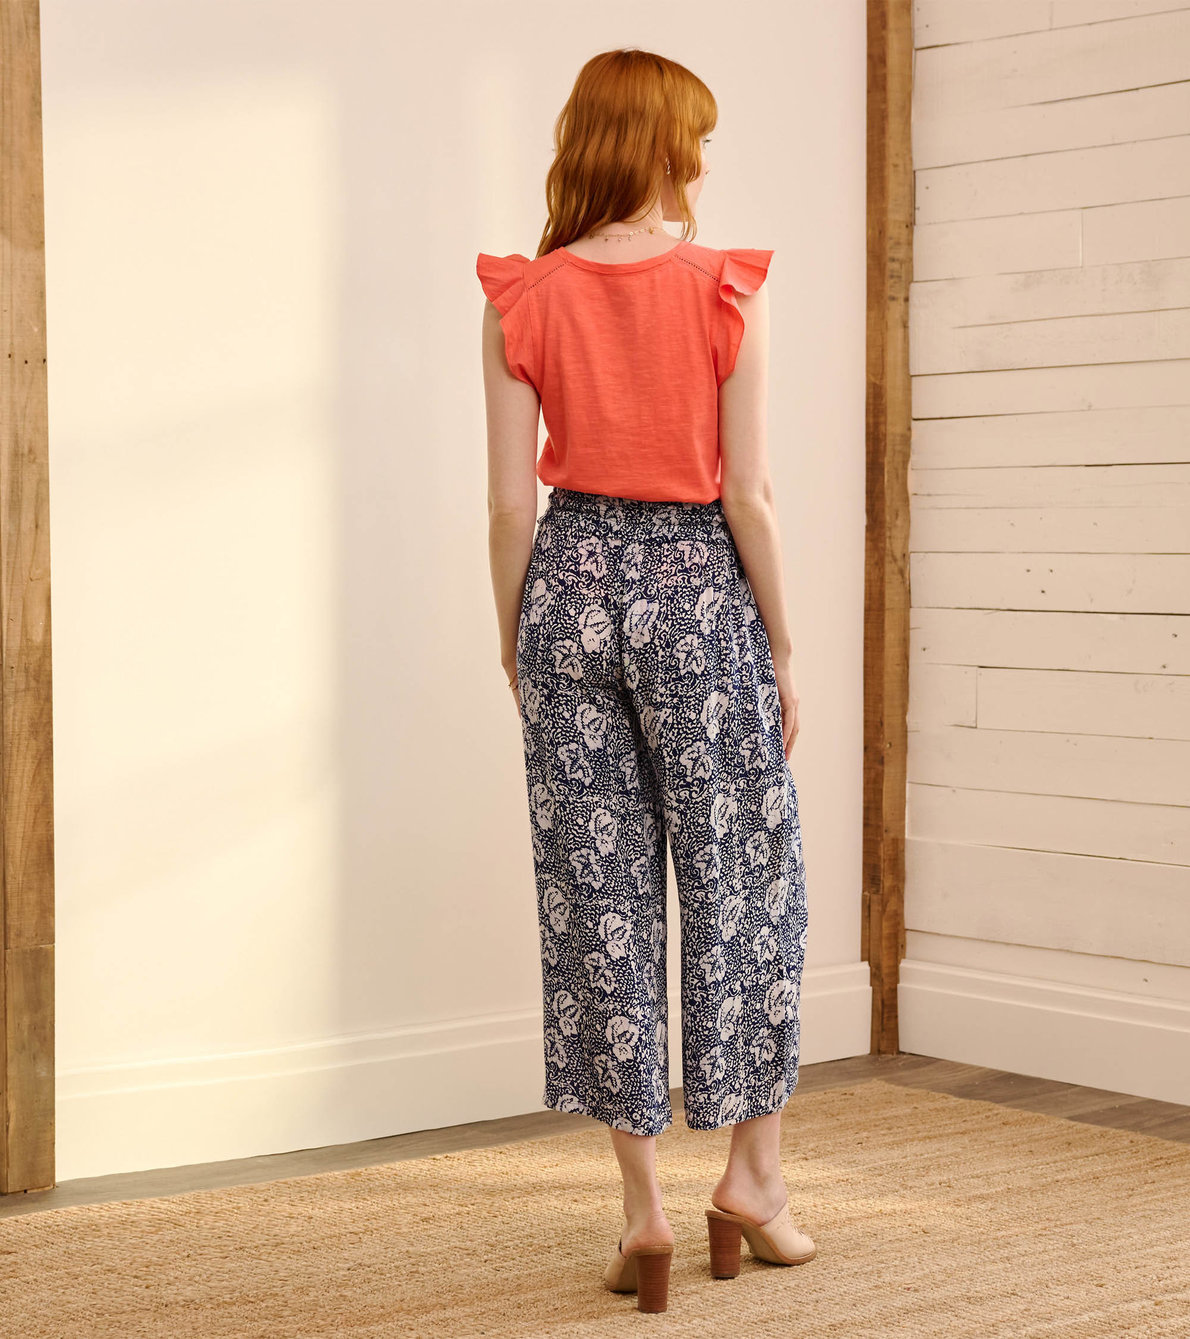 Agrandir l'image de Pantalon Cassie – Motifs floraux créés par shibori